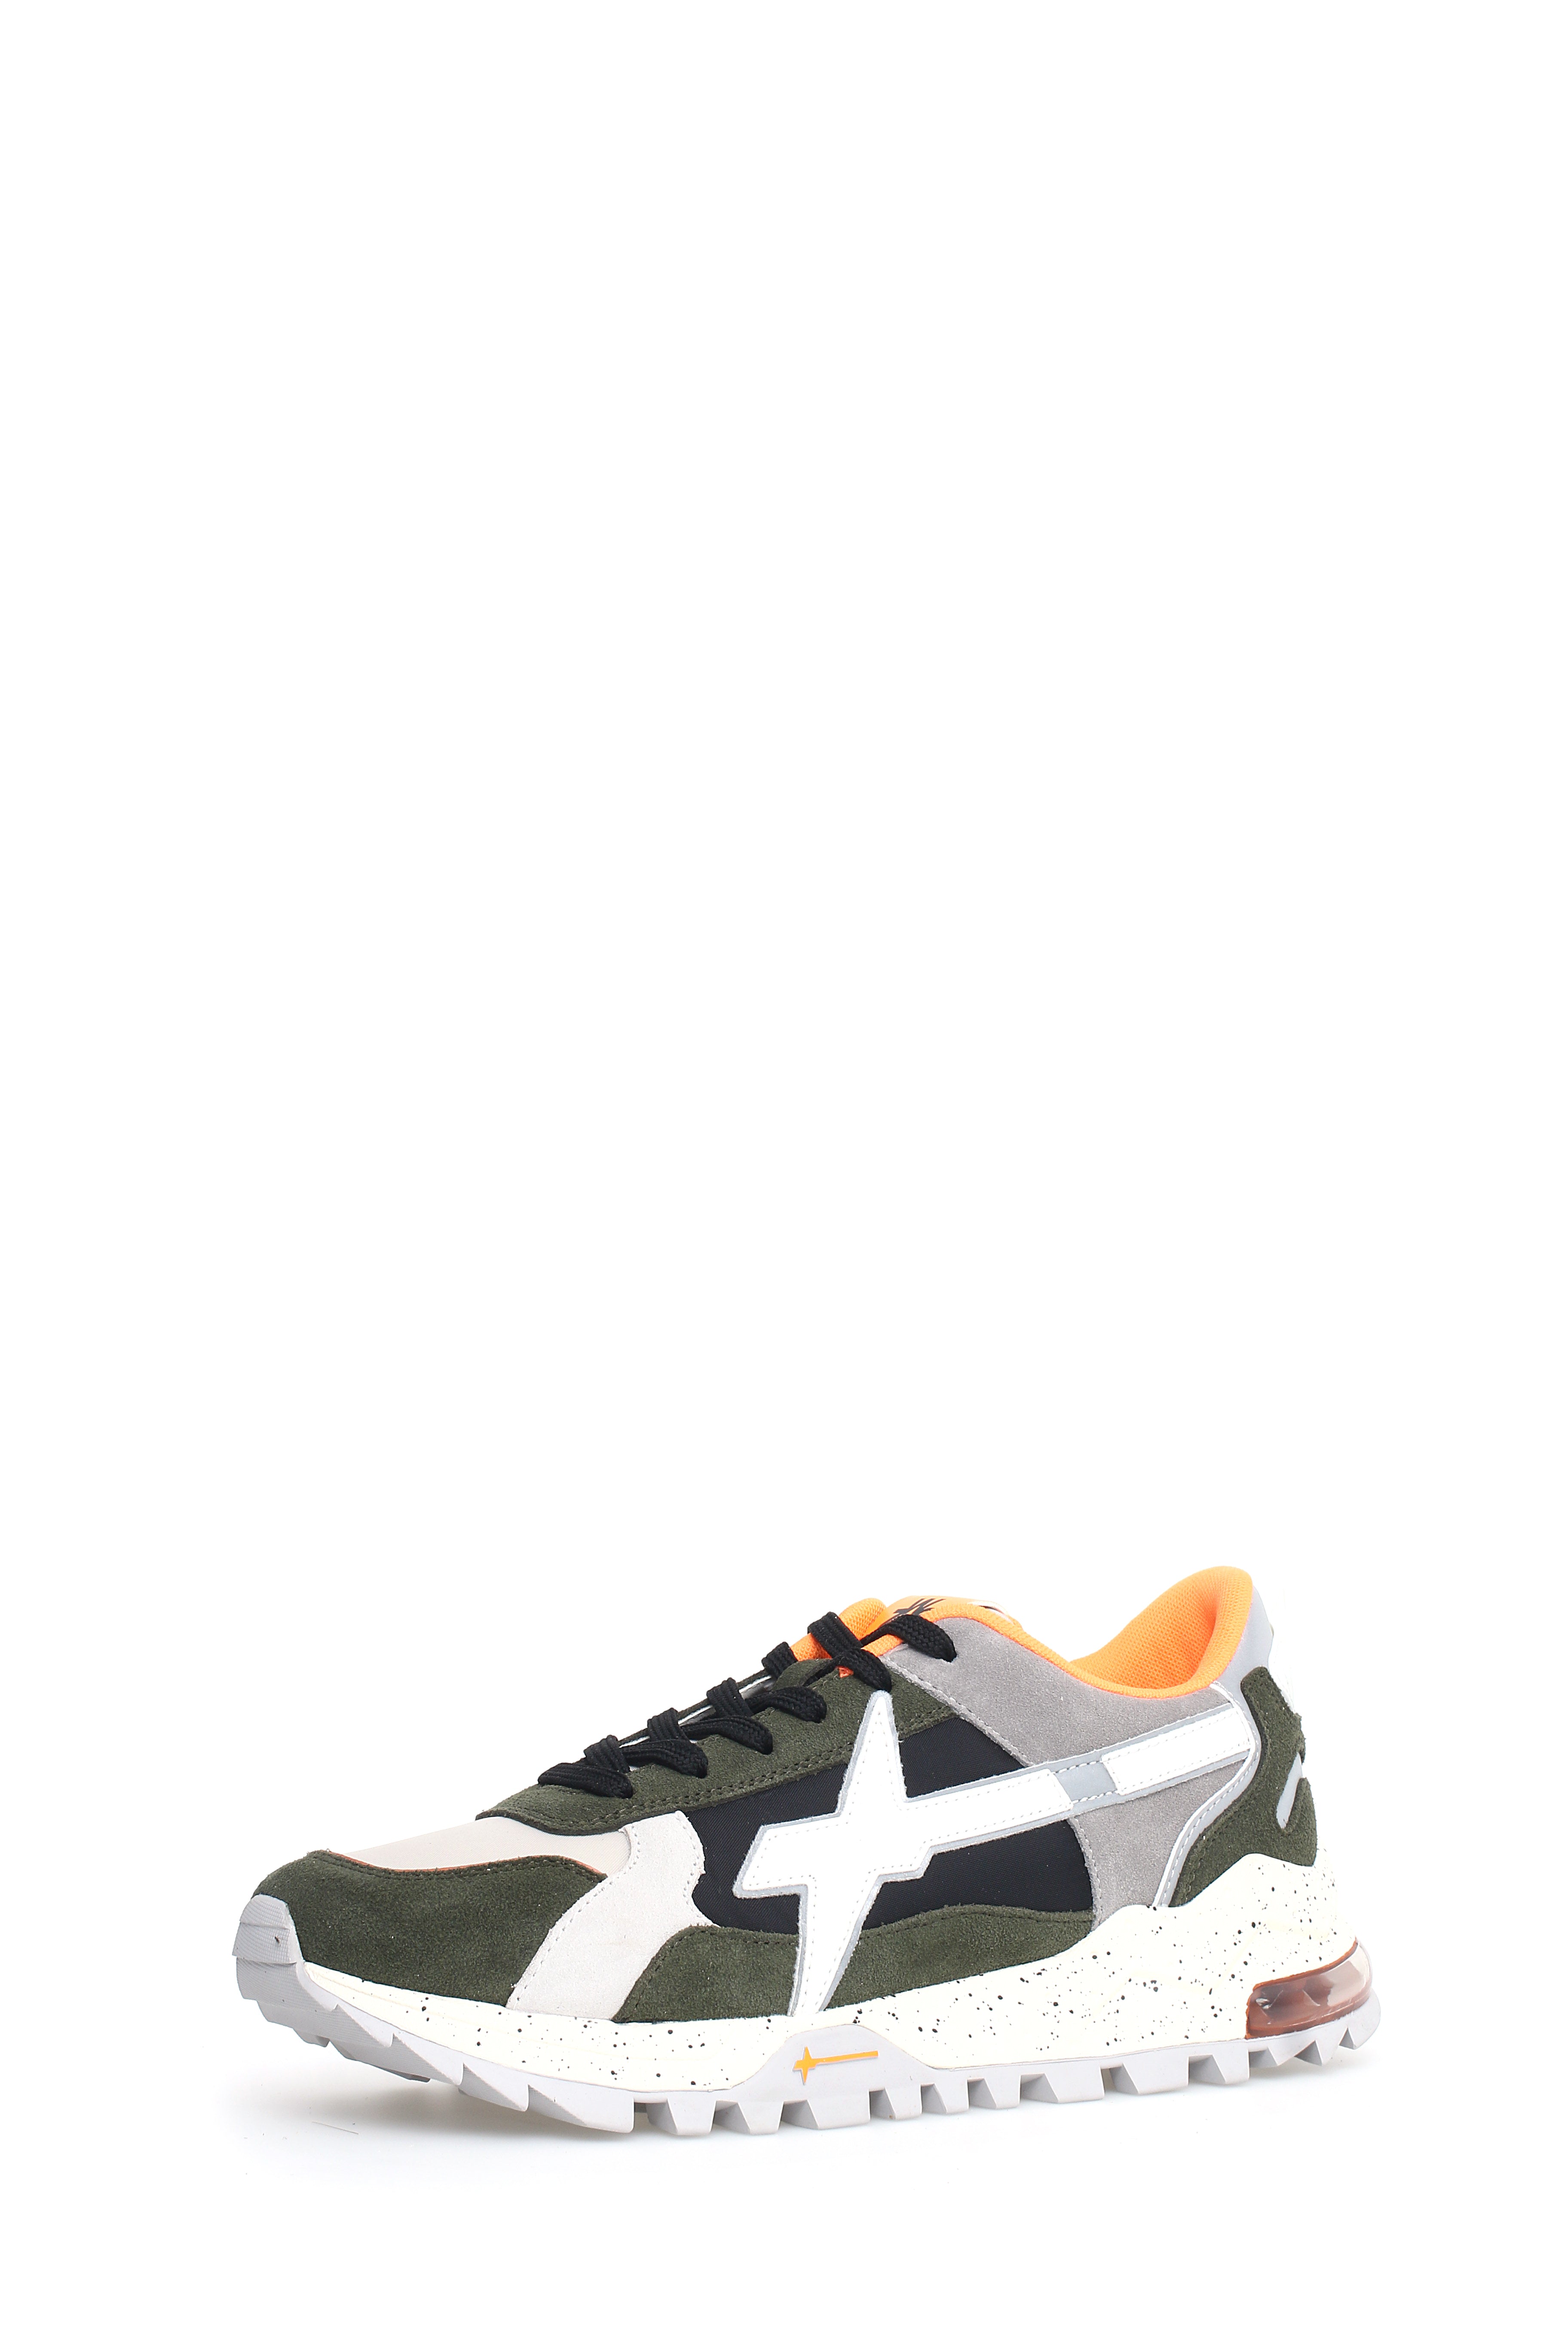 W6YZ-Sneaker Uomo K3 M-Militare Black